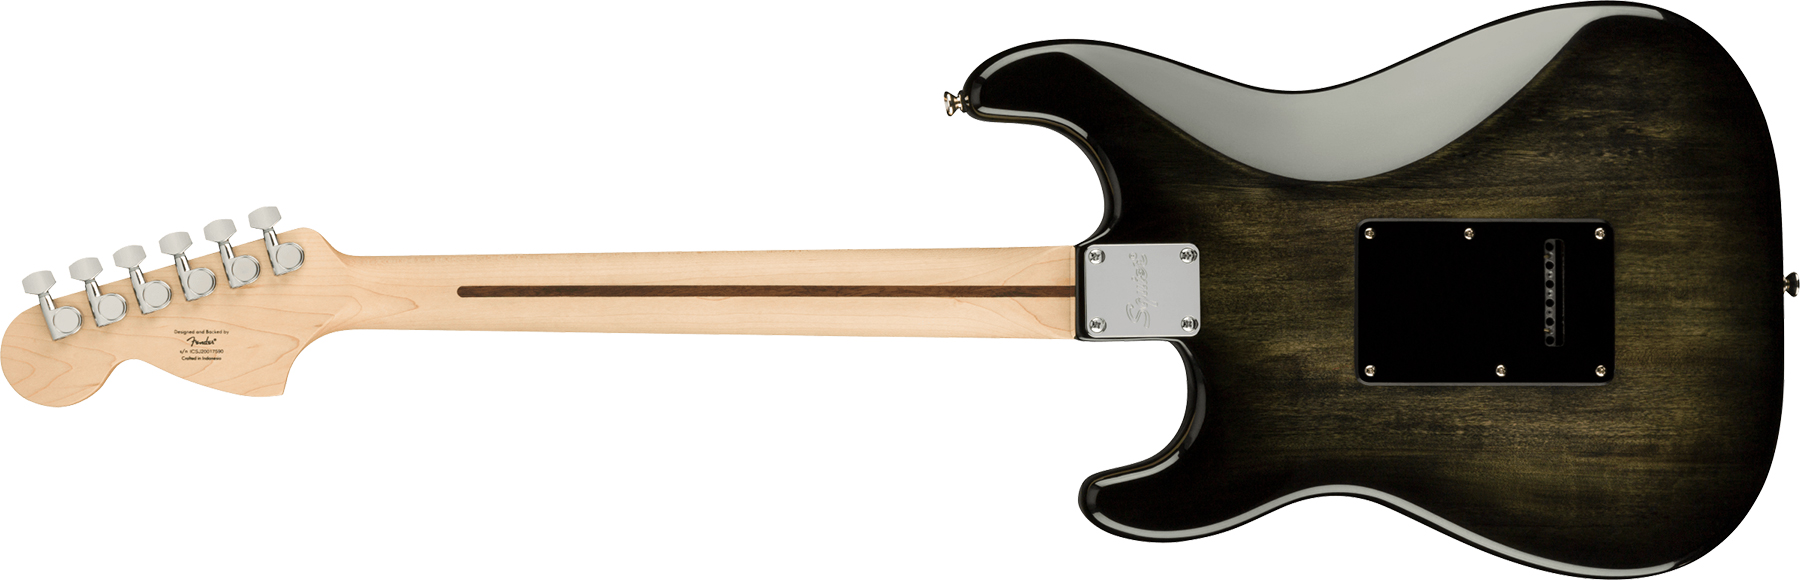 Squier Strat Affinity Fmt Hss 2021 Trem Mn - Black Burst - Str shape electric guitar - Variation 1